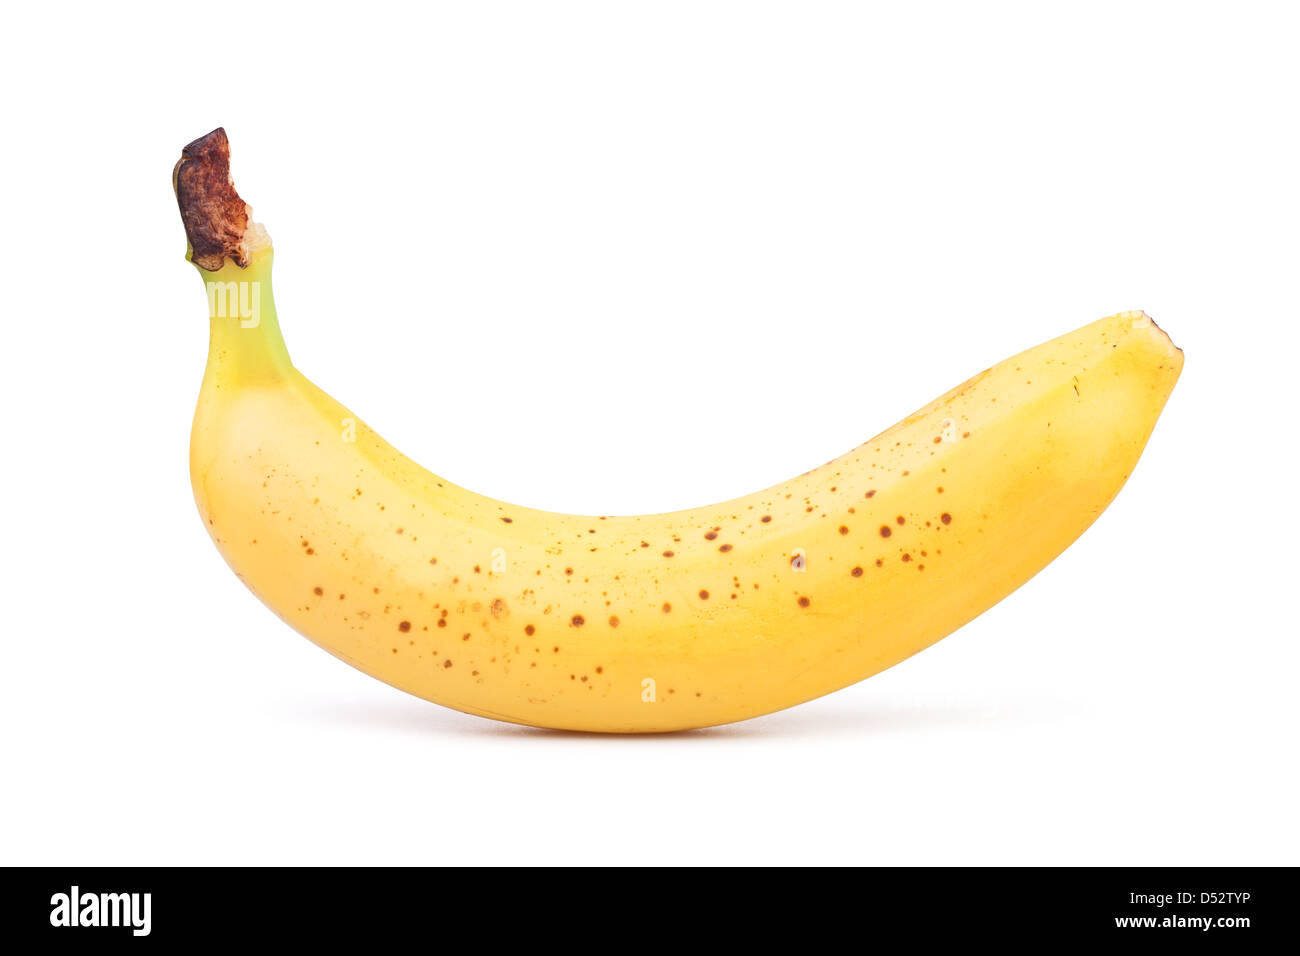 banana one on white background Stock Photo